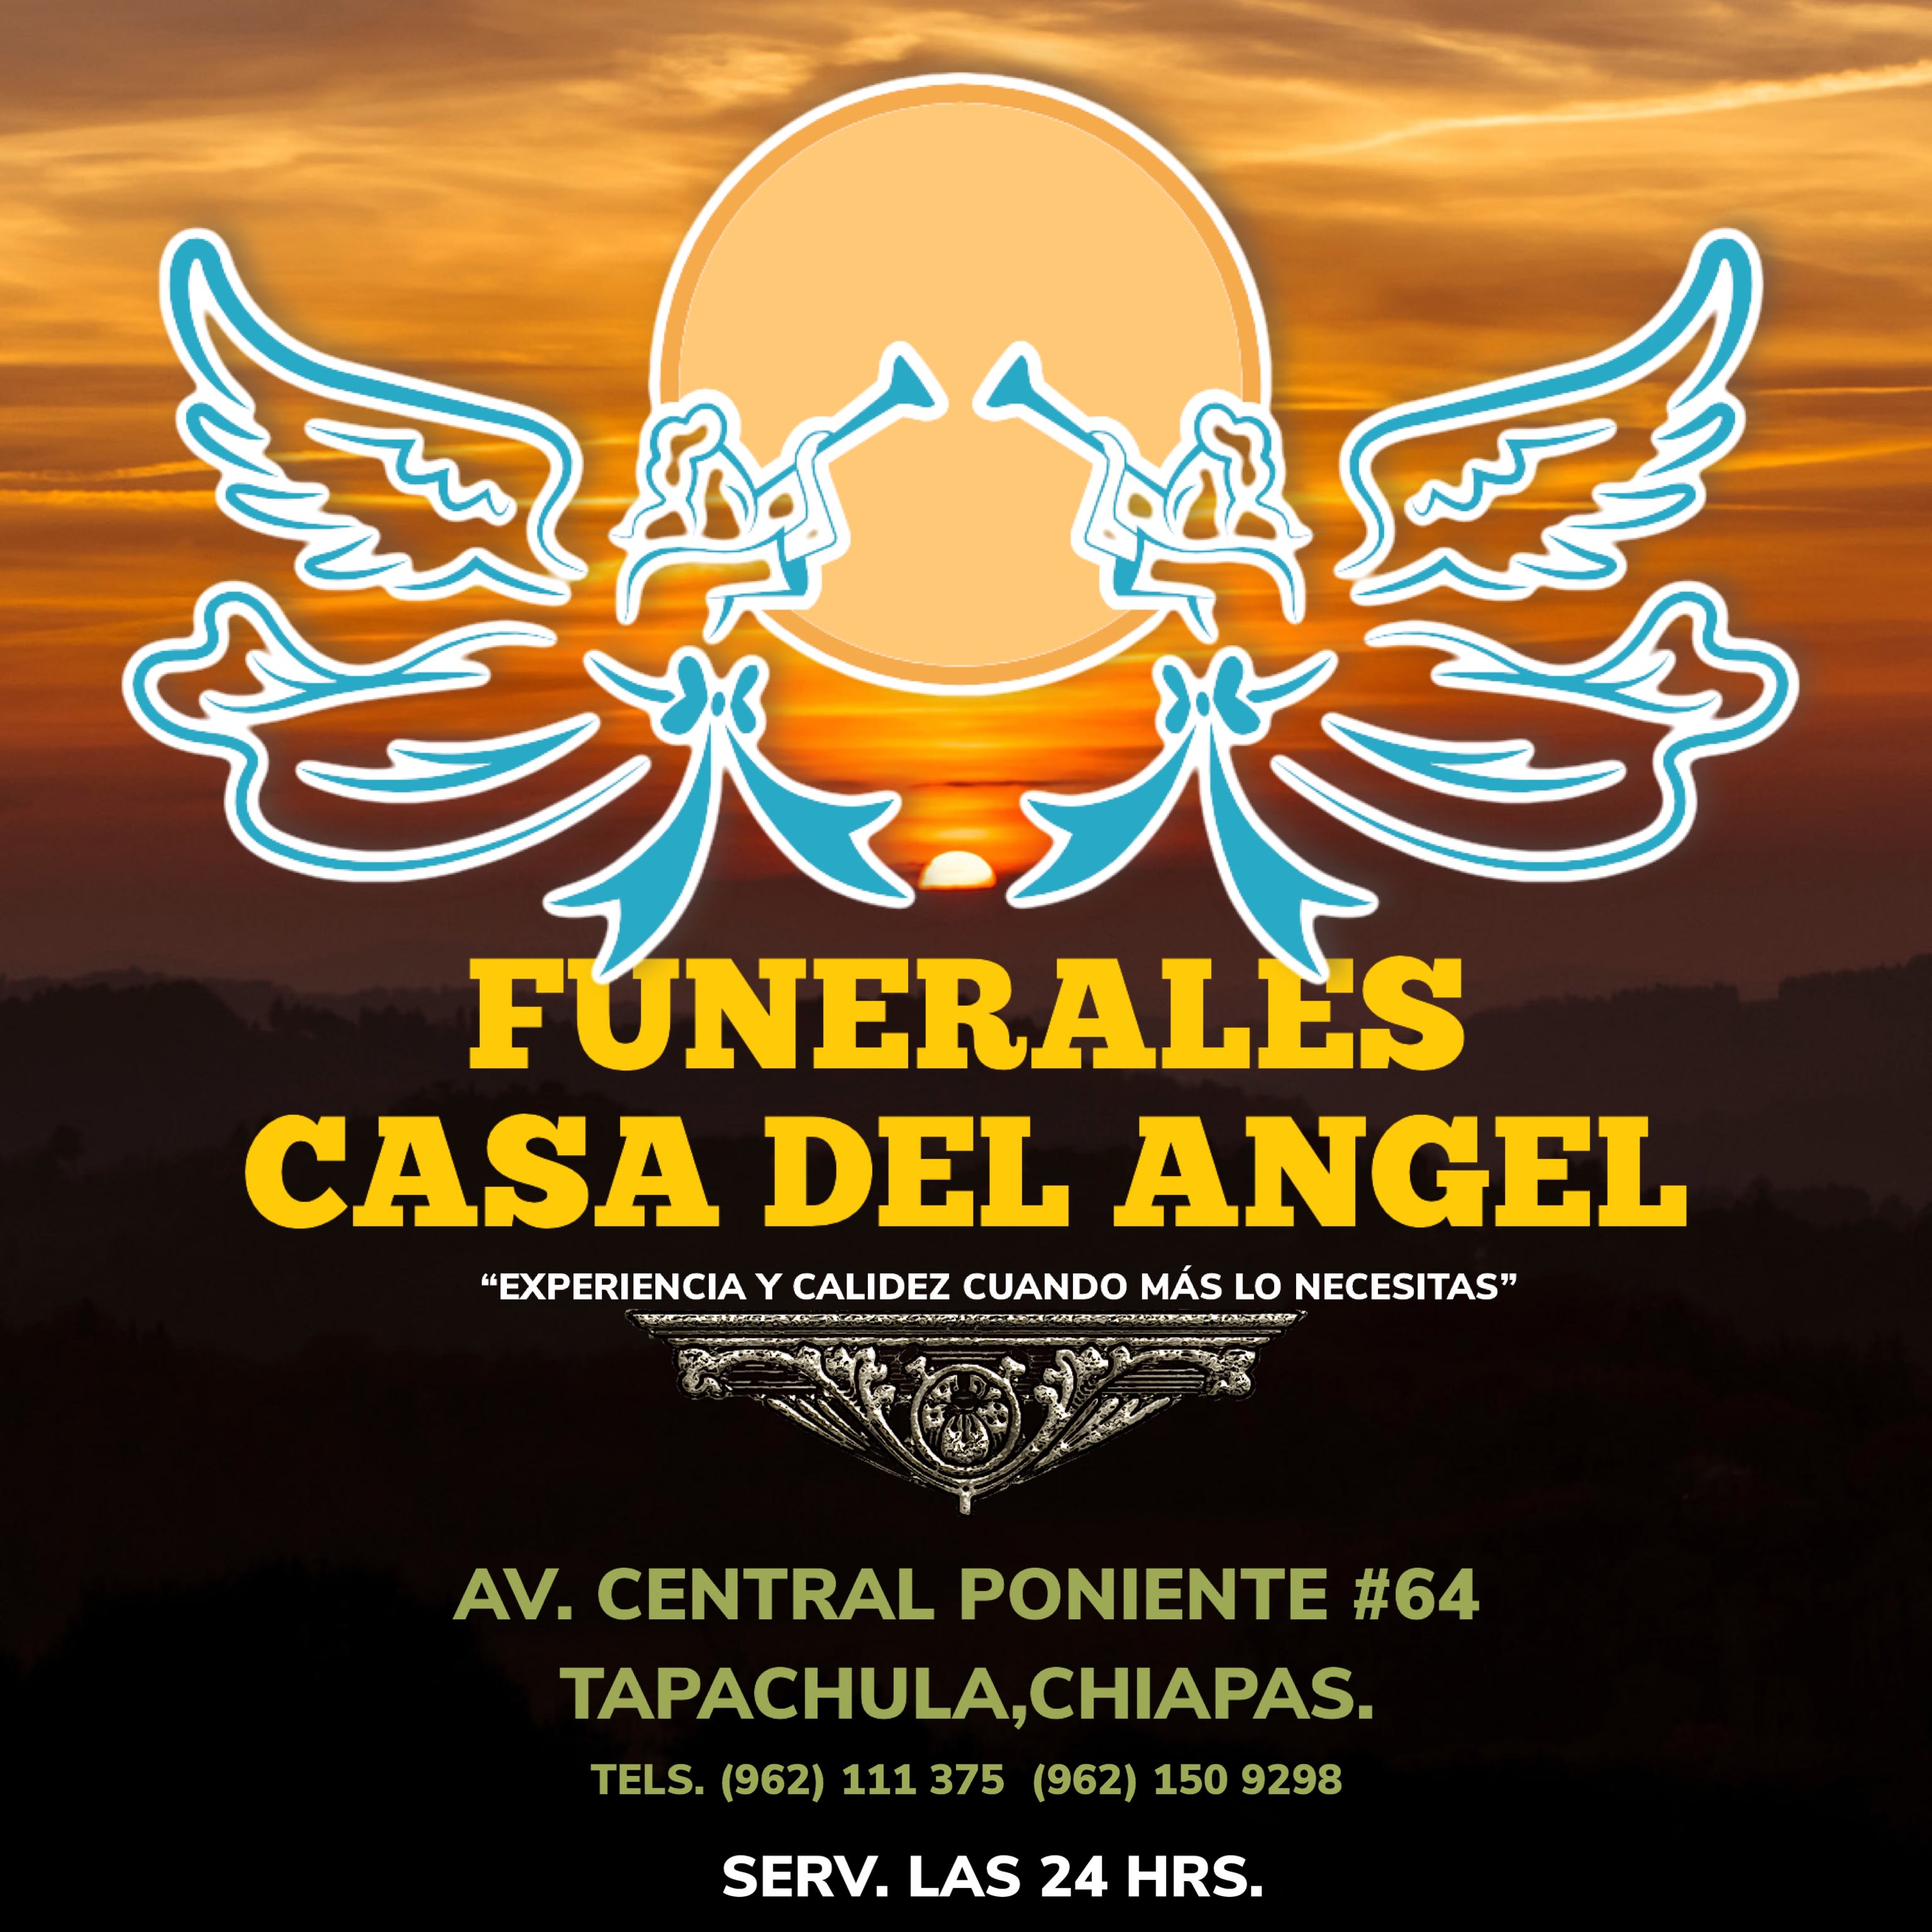 Funerales Casa del Angel